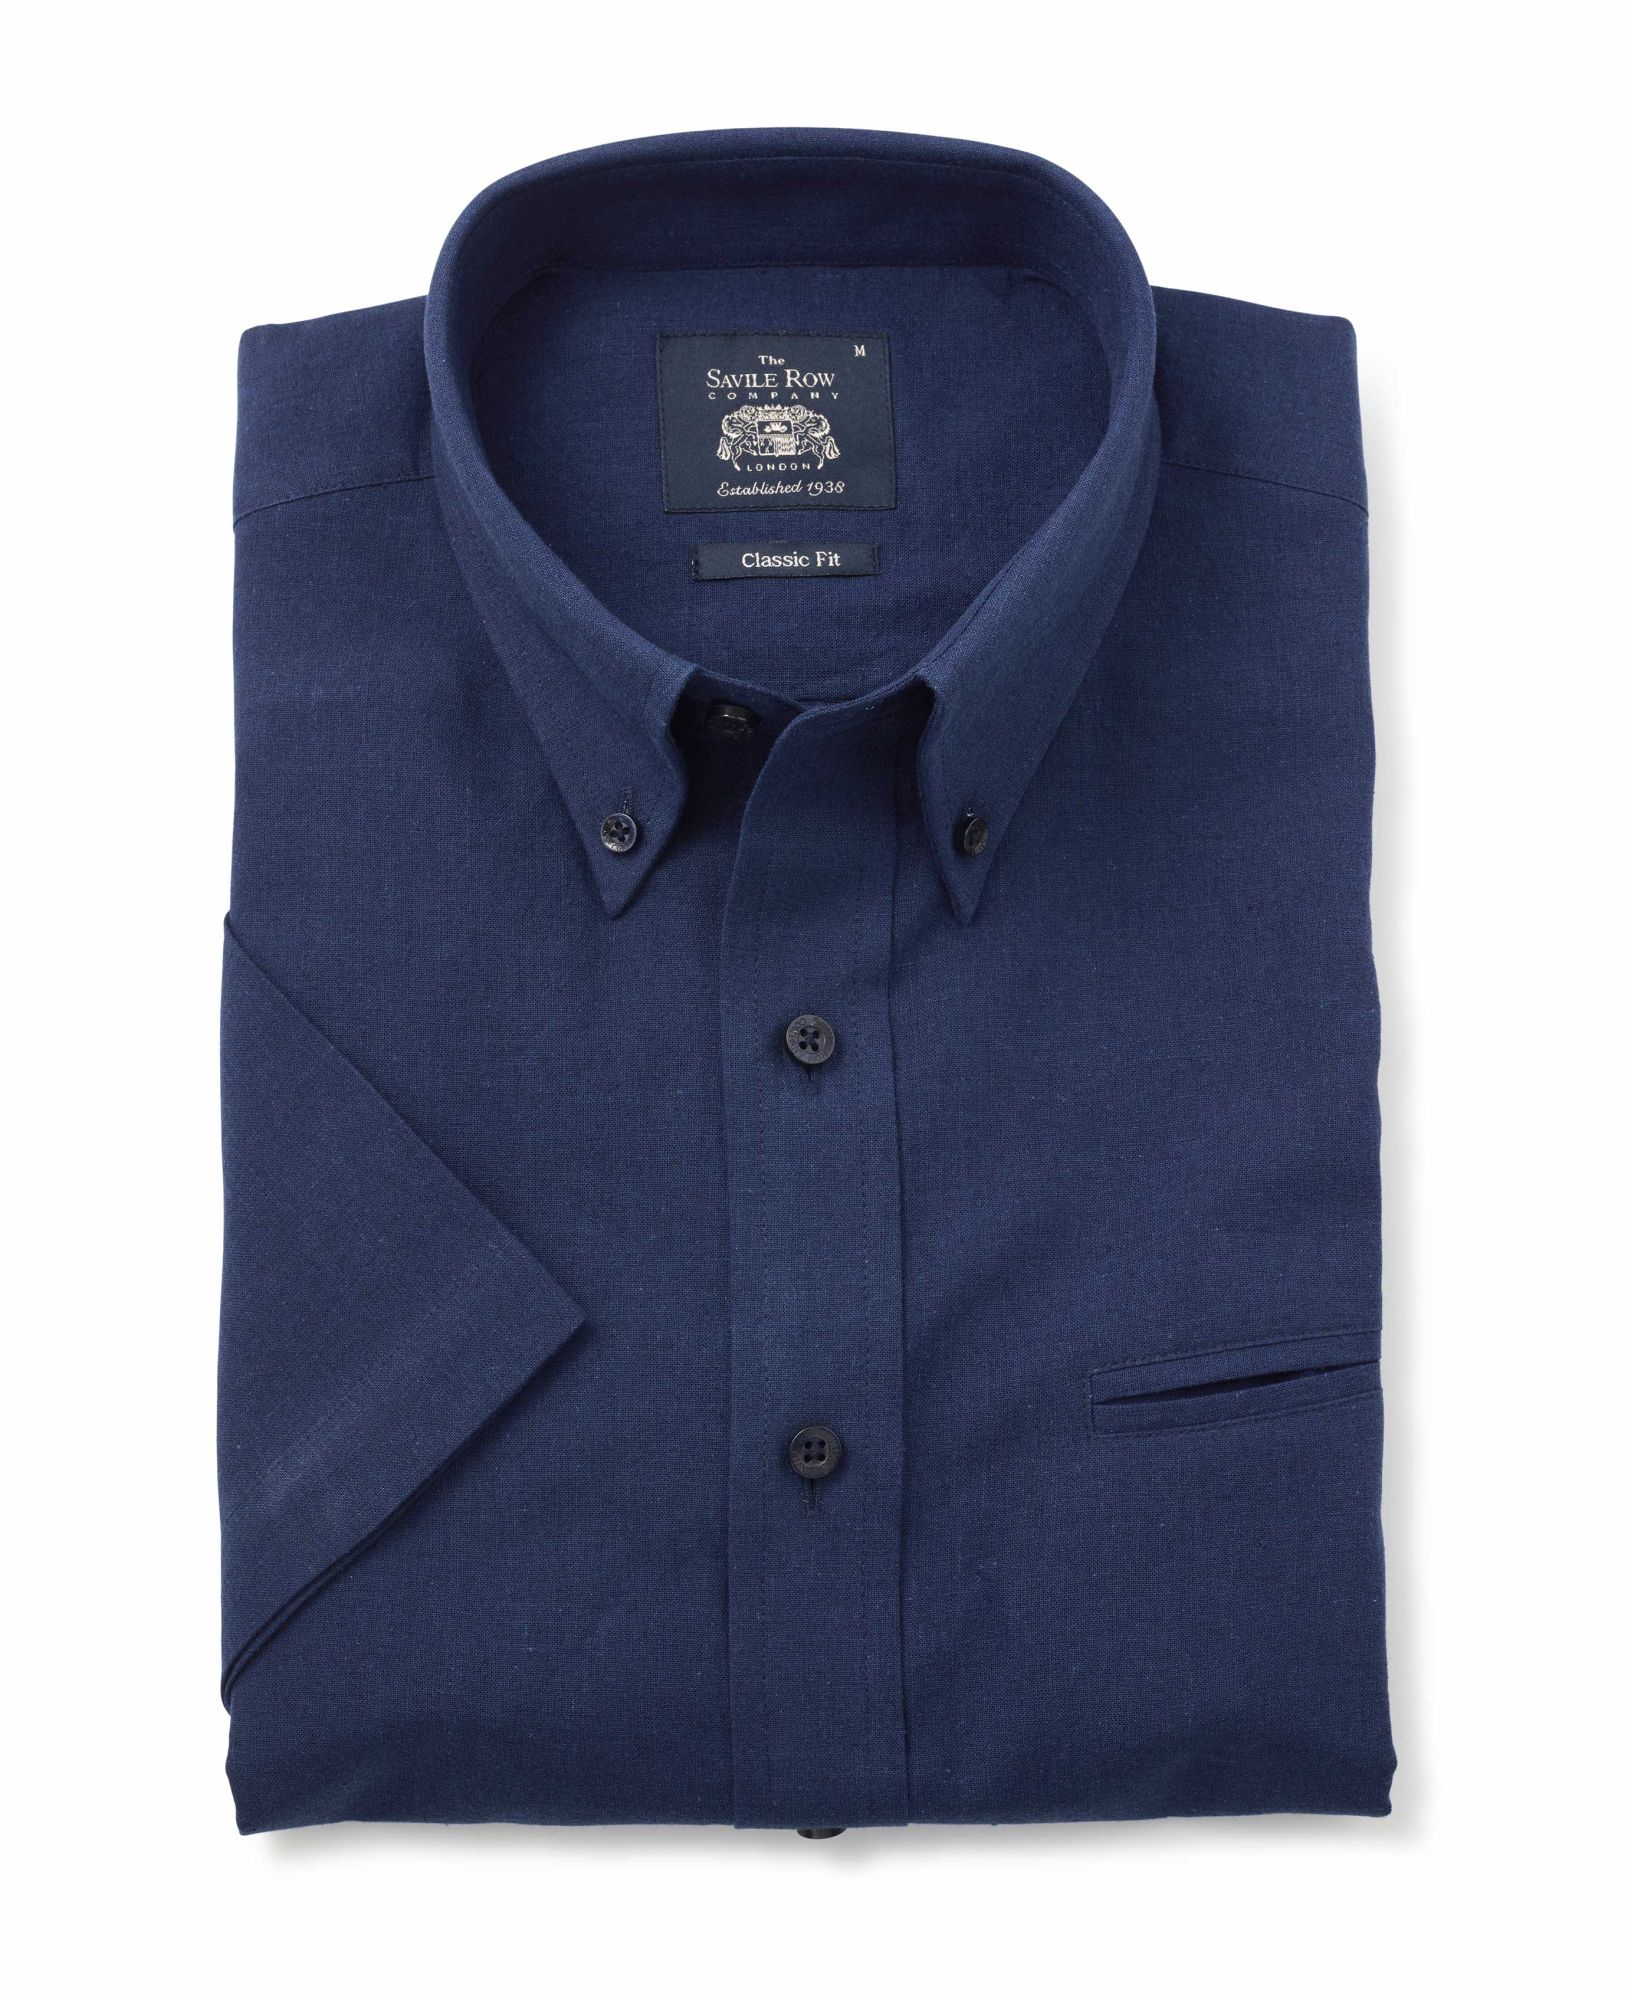 Navy Linen-Blend Classic Fit Short Sleeve Shirt L